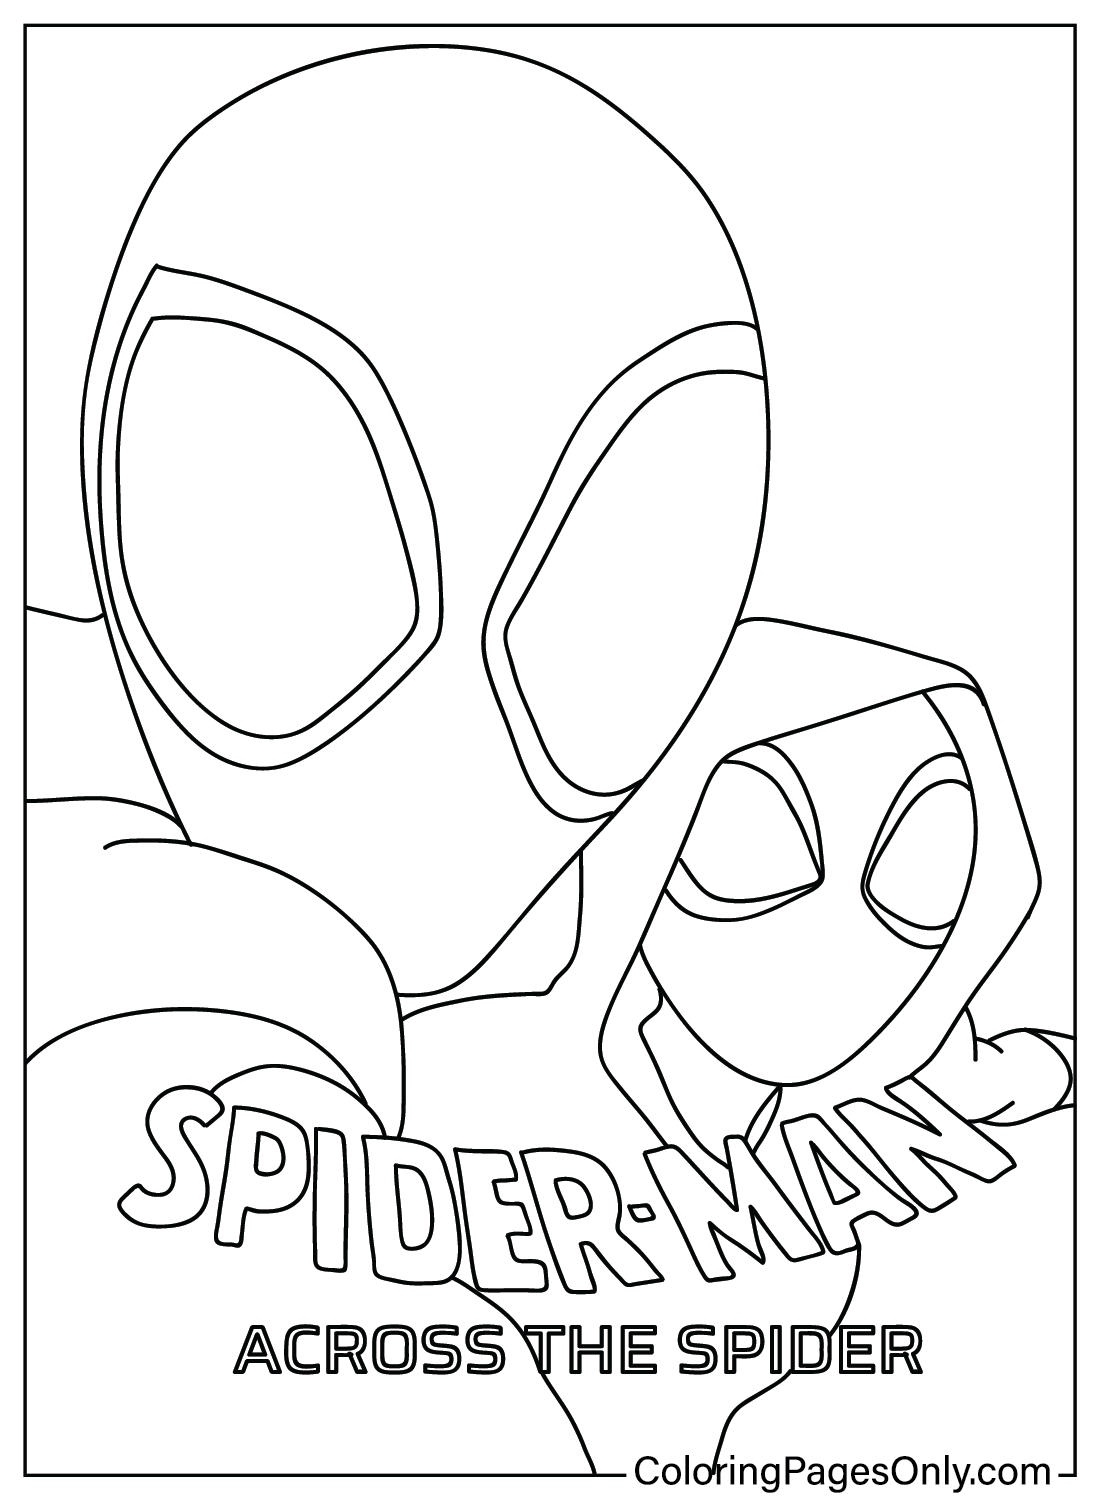 《蜘蛛侠：穿越蜘蛛》绘画彩页《蜘蛛侠：穿越蜘蛛》